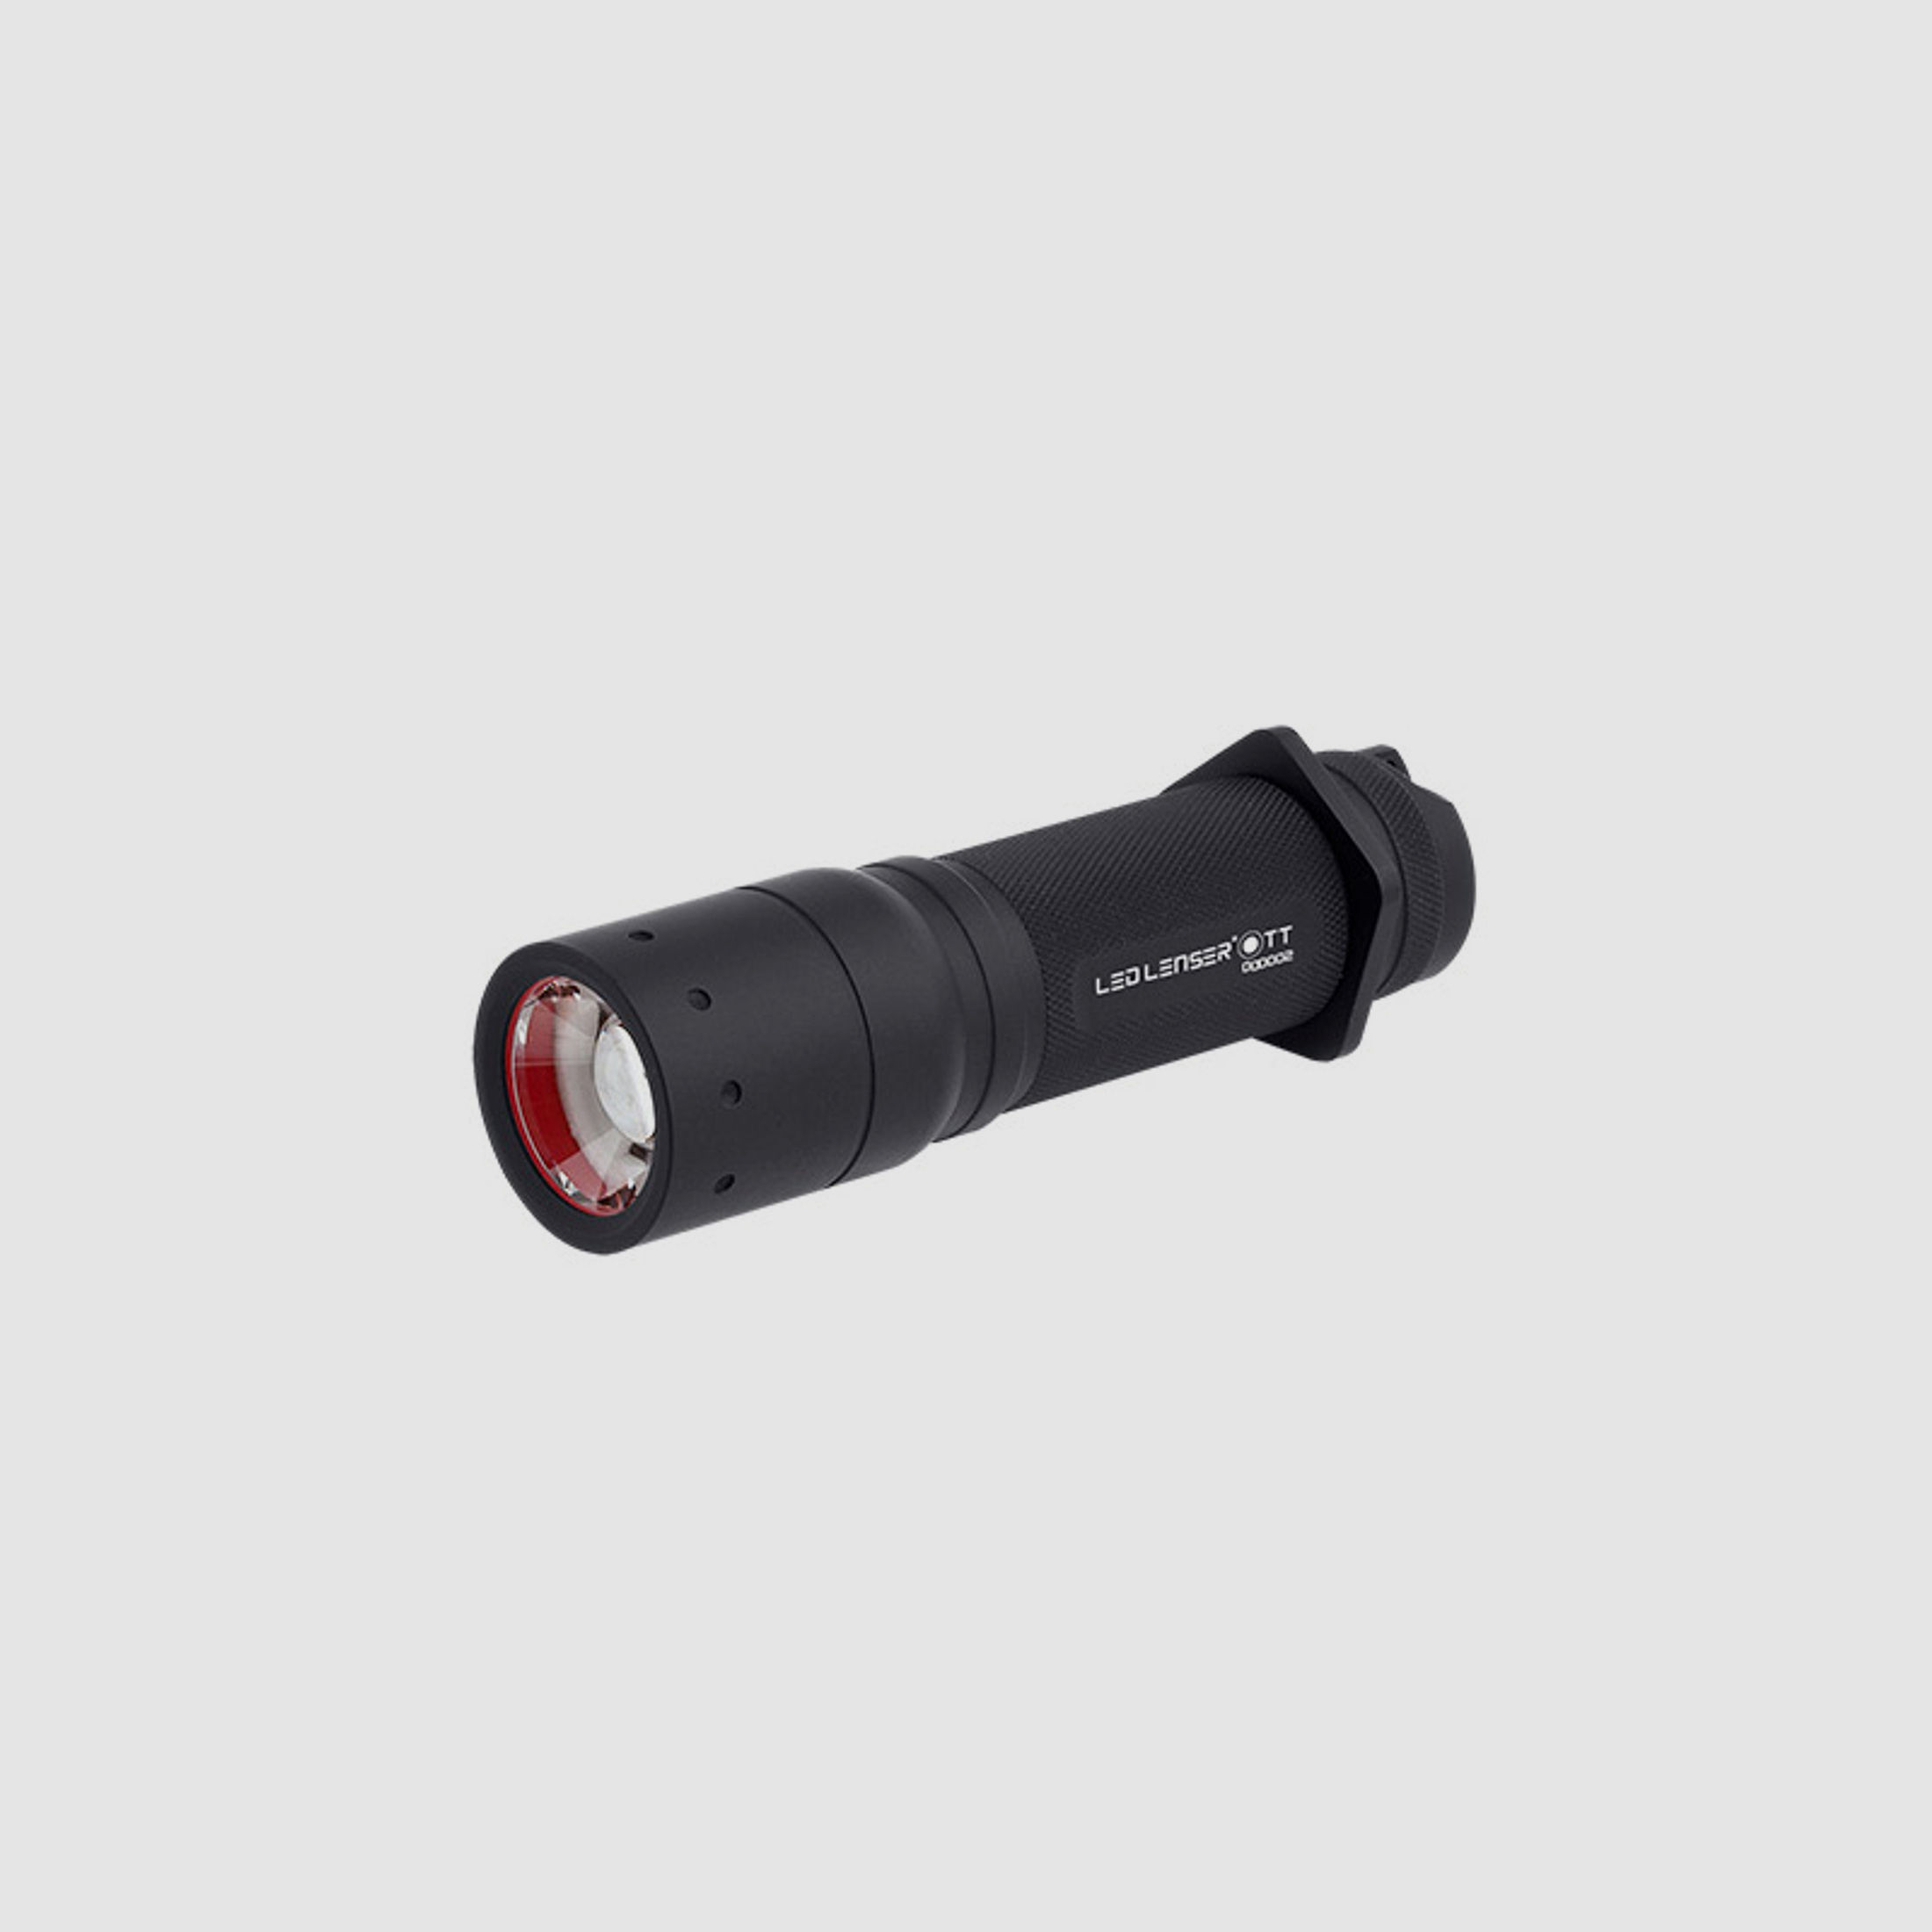 LED Taschenlampe Led Lenser TT mit High End Power LED 280 Lumen